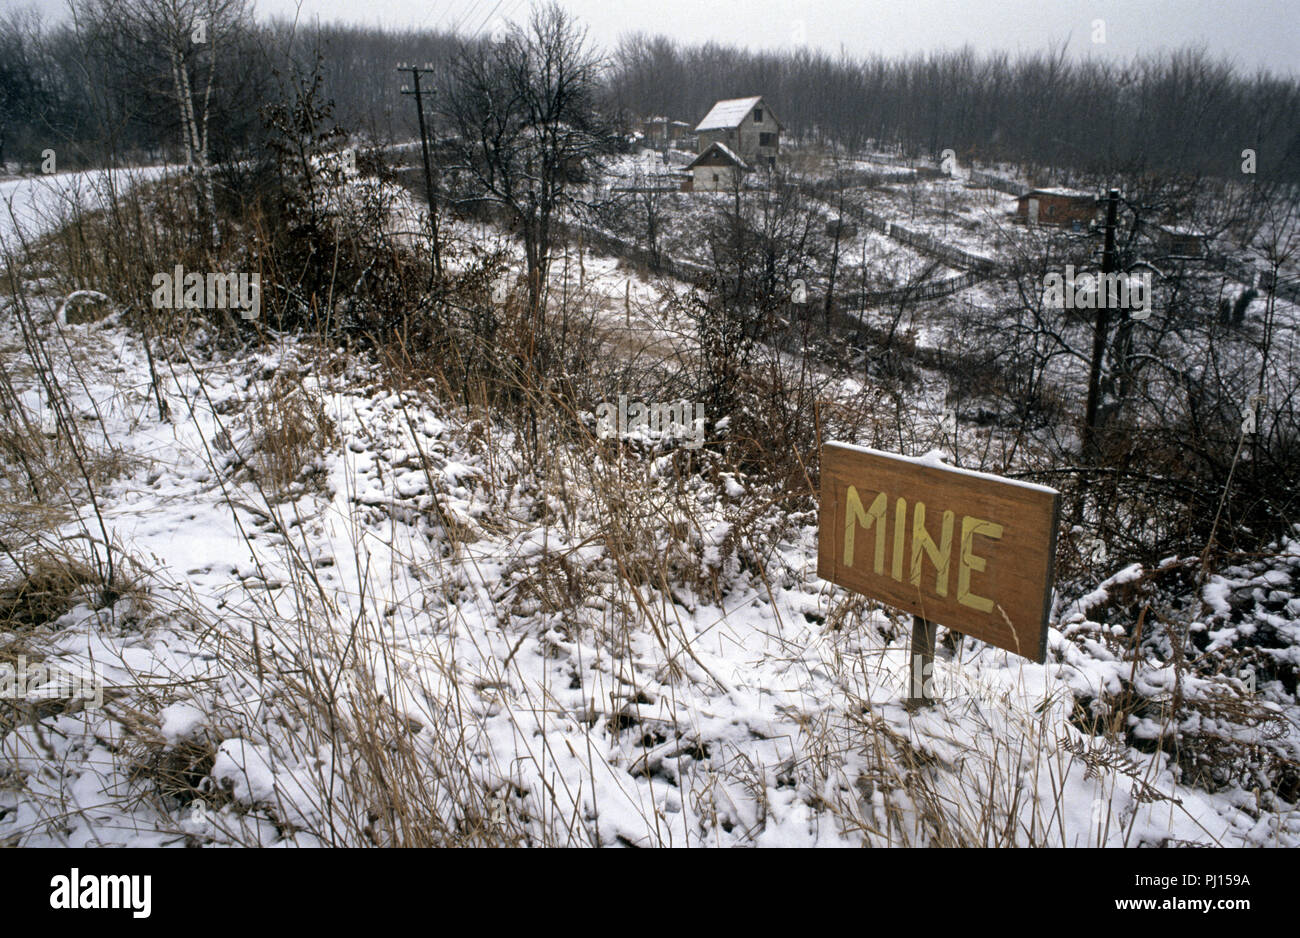 5 Marzo 1993 durante la guerra in Bosnia: a circa metà strada tra Sarajevo e Kiseljak, una strada minato è contrassegnato con un segno di rudimentali. Questo è stato nella terra di nessuno tra bosniaco-territorio controllato e che controllato dall'HVO (croati). Foto Stock